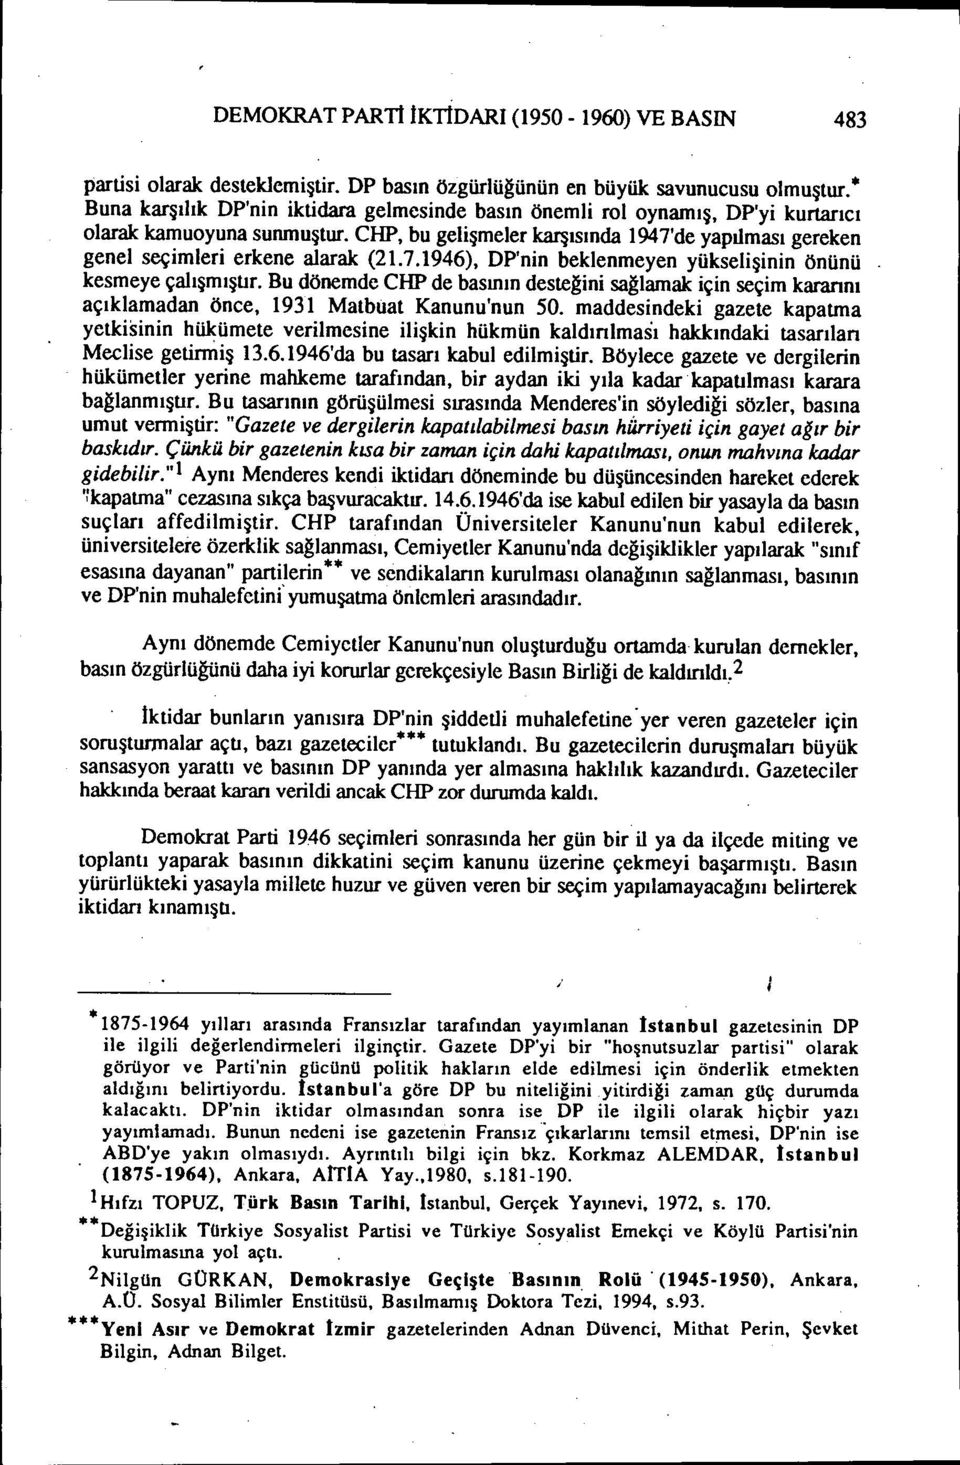 7.1946), DP'nin beklenmeyen yükselişinin önünü kesmeye çalışmıştır. Bu dönemde CHP de basının desteğini sağlamak için seçim kararını açıklamadan önce, 1931 Matbuat Kanunu'nun 50.